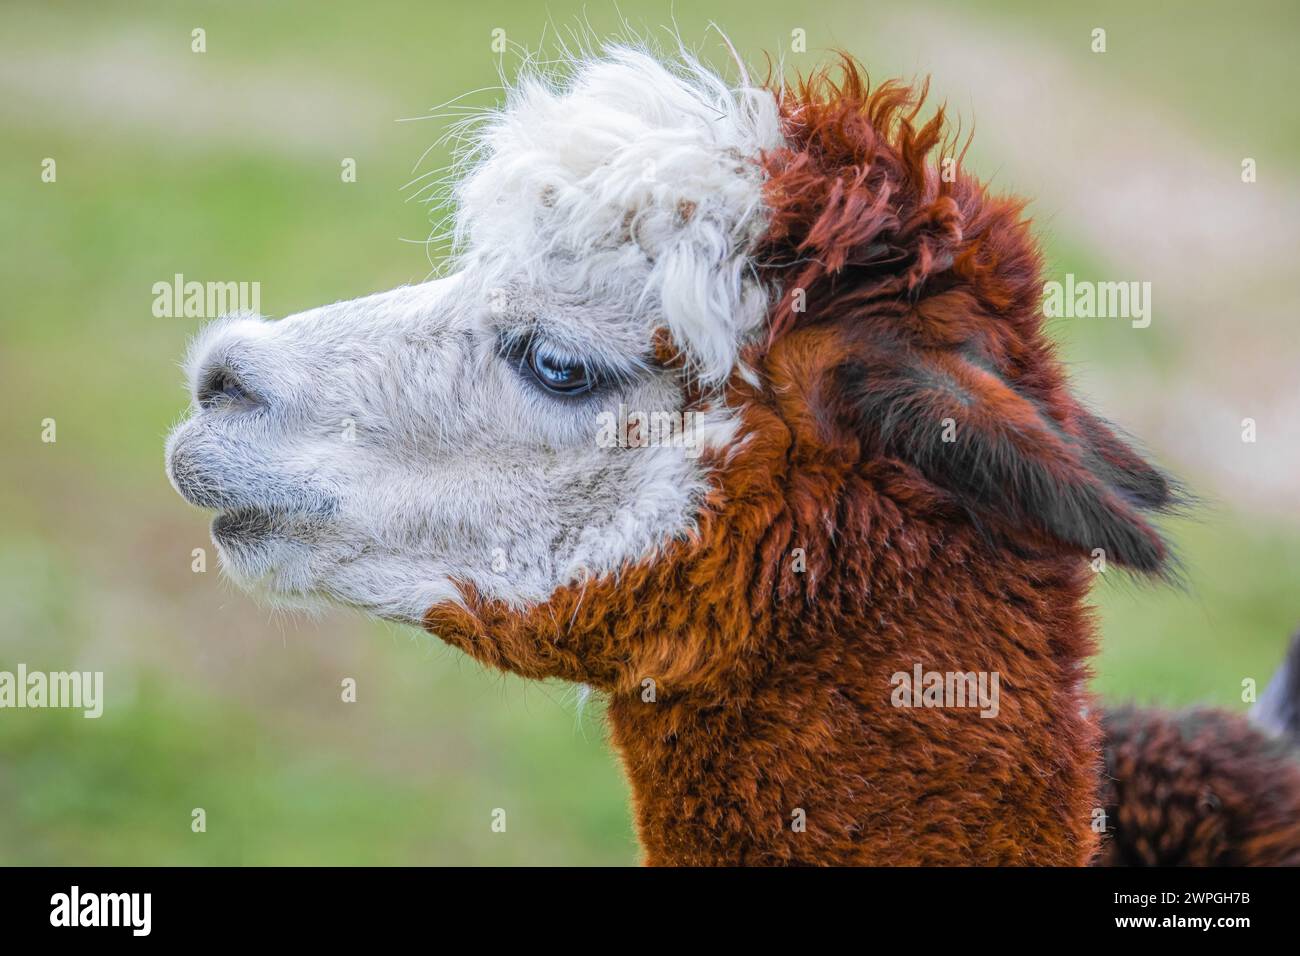 Grazioso alpaca con occhi blu in fattoria. Bellissimo e divertente animale ( Vicugna pacos ) specie di camelide sudamericano. Foto Stock